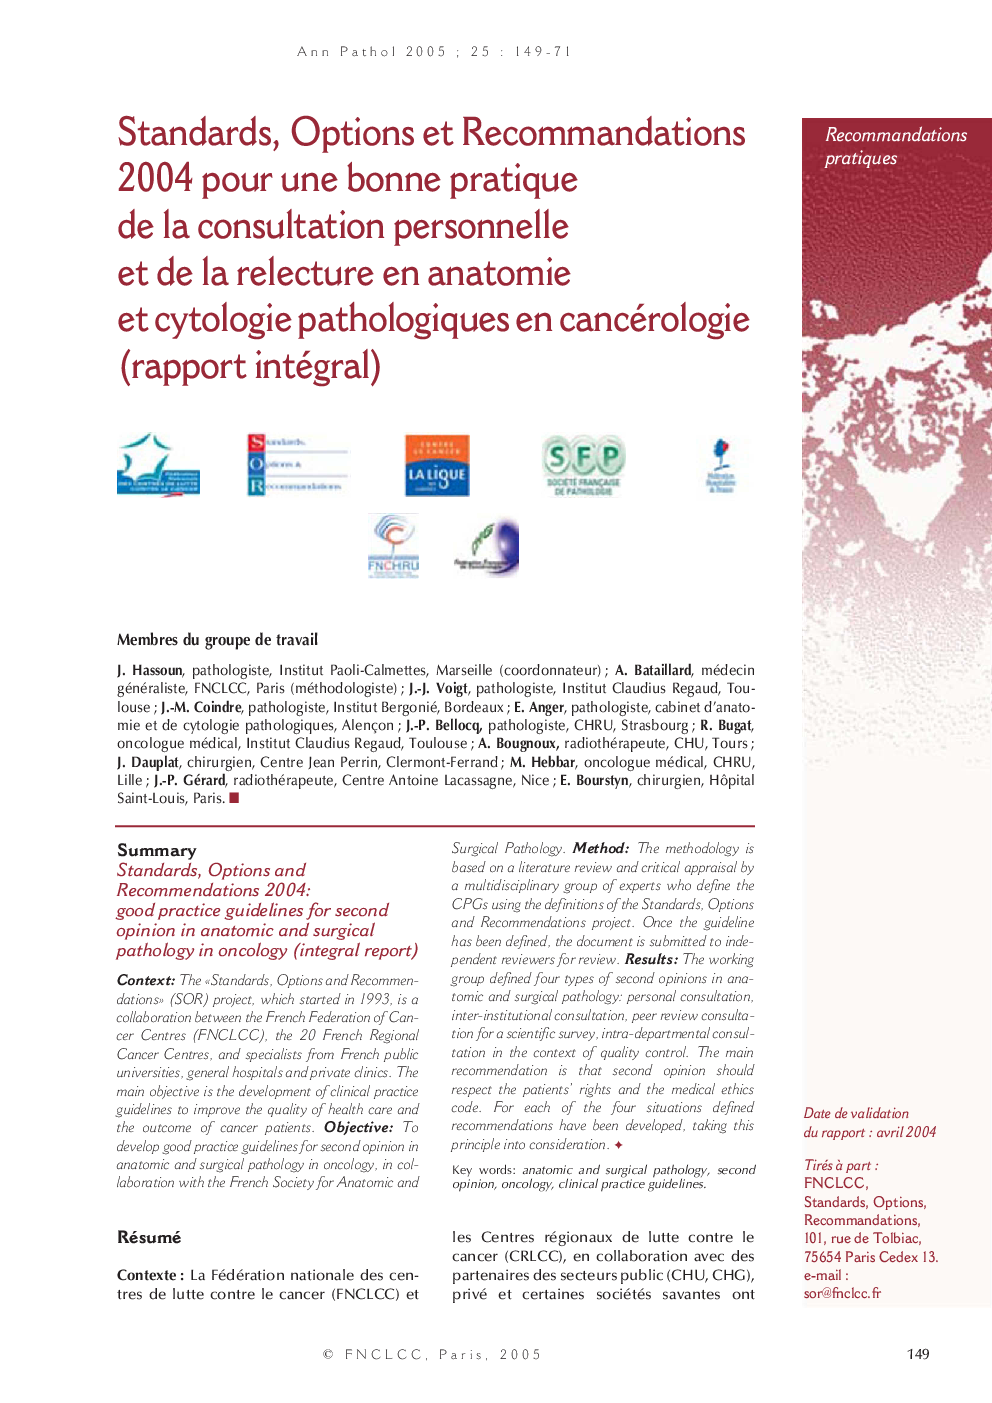 Standards, Options et Recommandations 2004 pour une bonne pratique de la consultation personnelle et de la relecture en anatomie et cytologie pathologiques en cancérologie (rapport intégral)